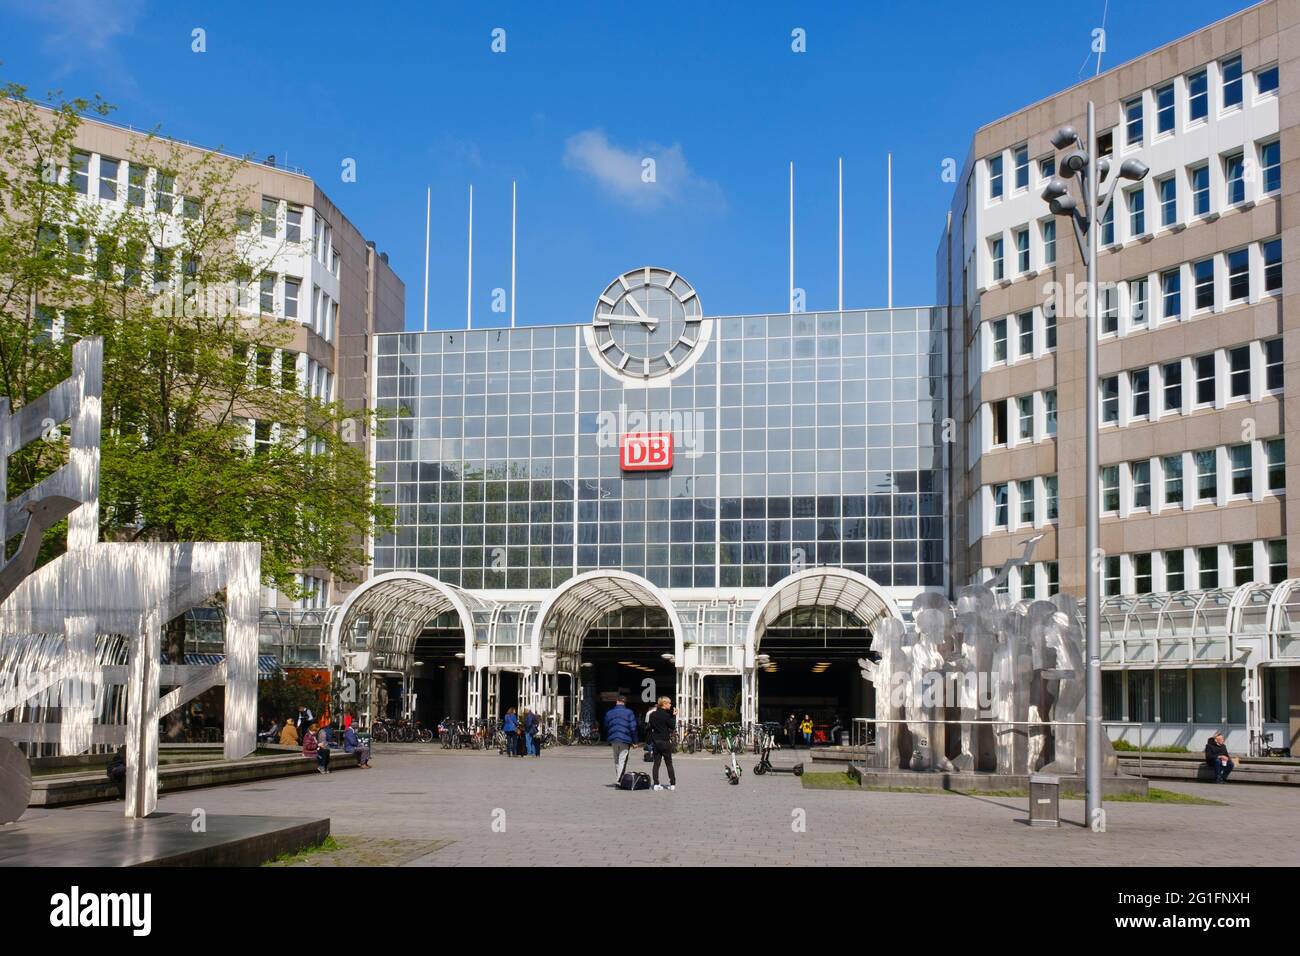 Entrée à la gare centrale de Düsseldorf, vue inversée, Düsseldorf, Rhénanie-du-Nord-Westphalie, Allemagne Banque D'Images